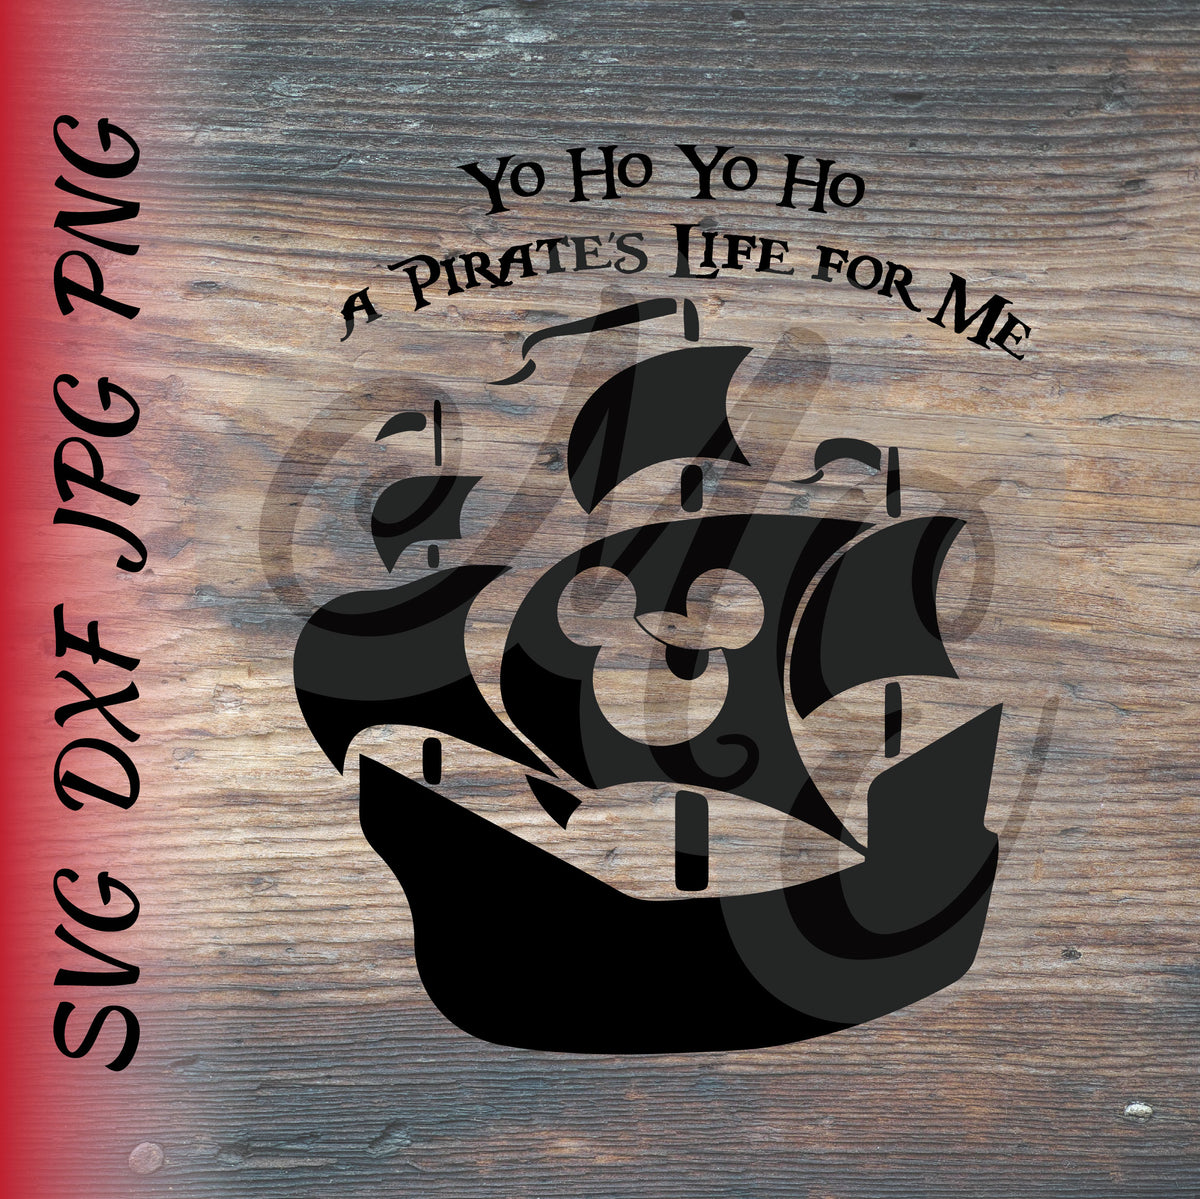 Disney Yo Ho Yo Ho A Pirates Life SVG